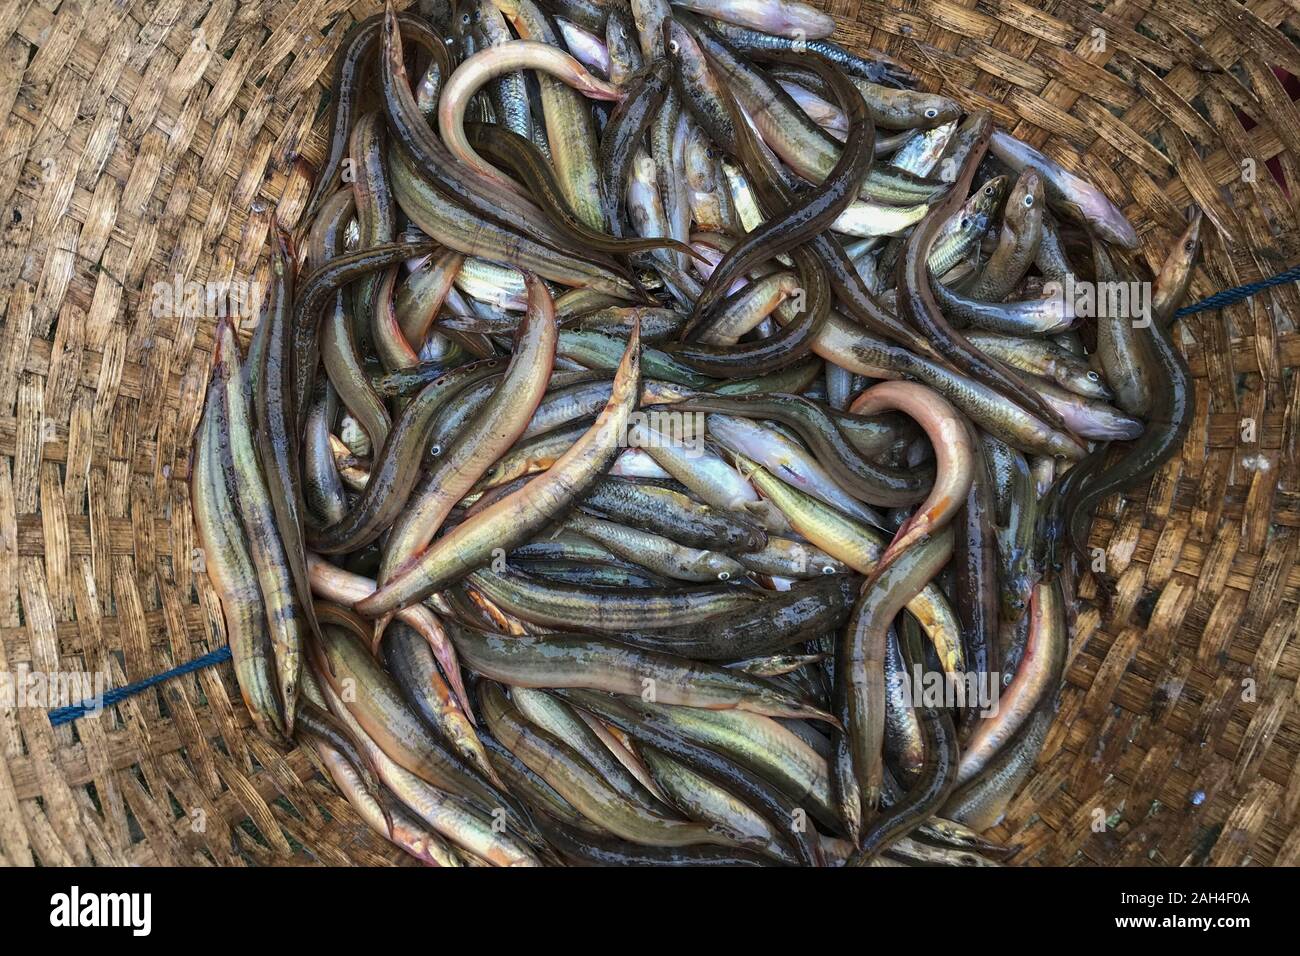 Freshwater fishes of Bangladesh. Stock Photo